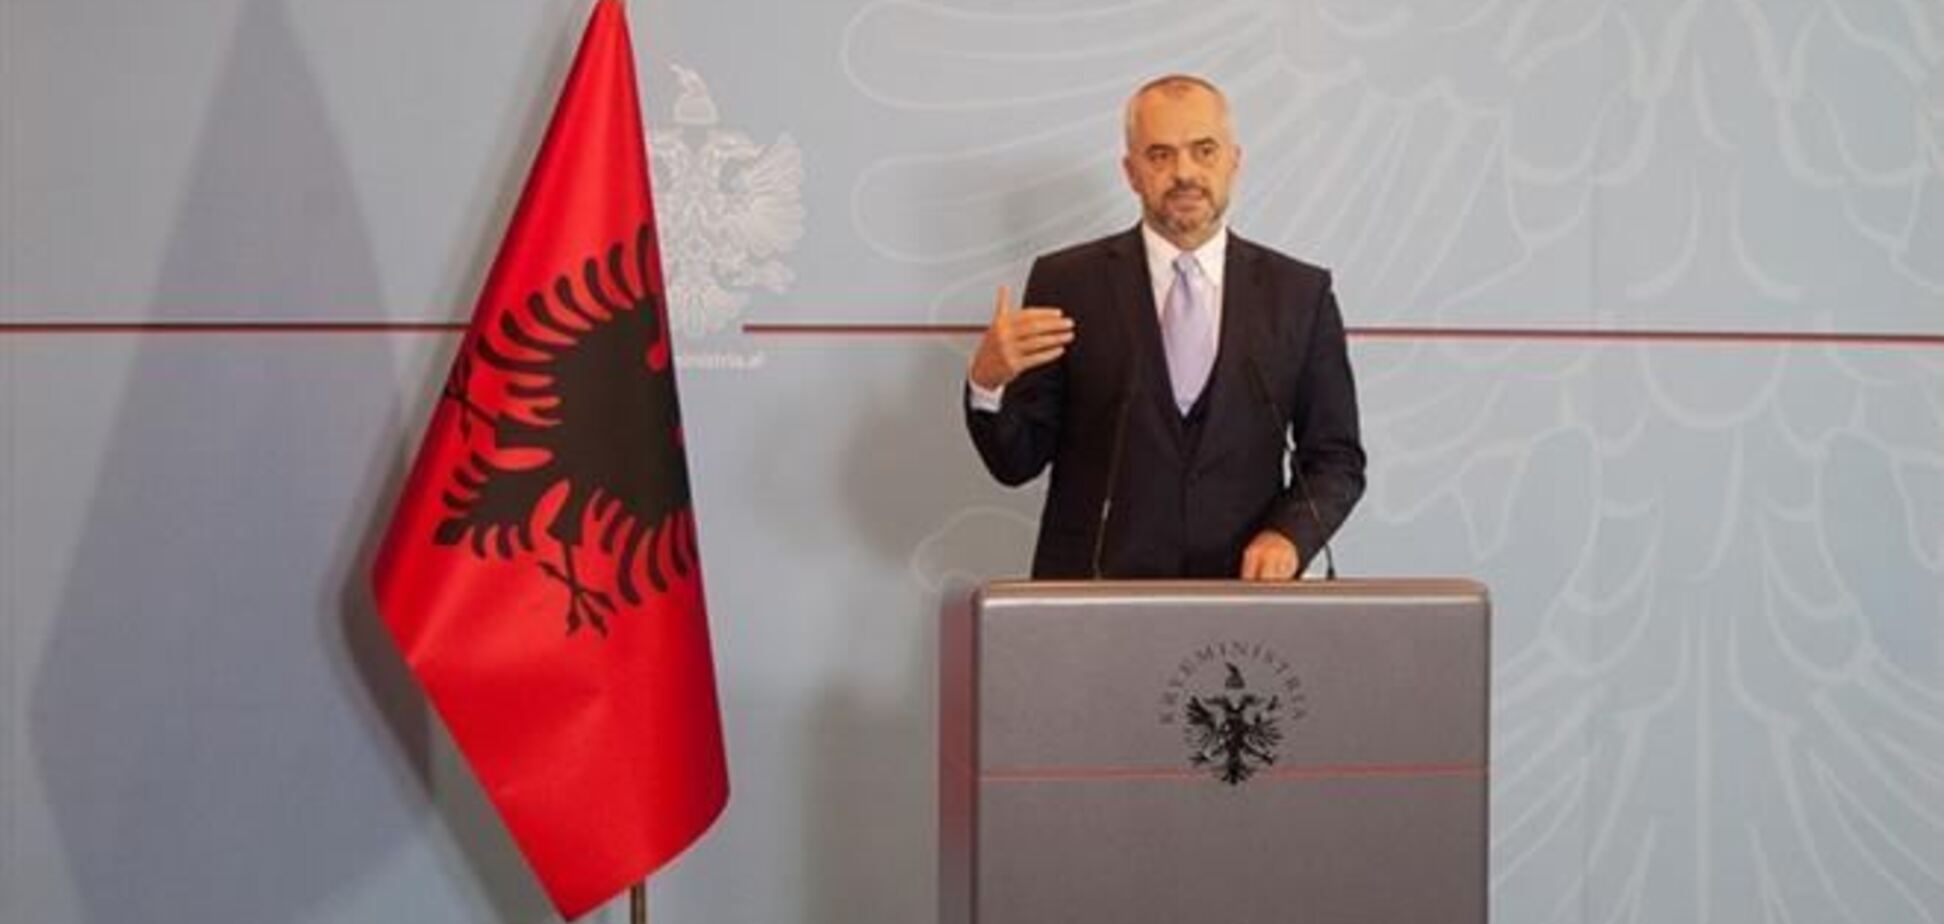 В резиденции премьера Албании обнаружили заминированный автомобиль